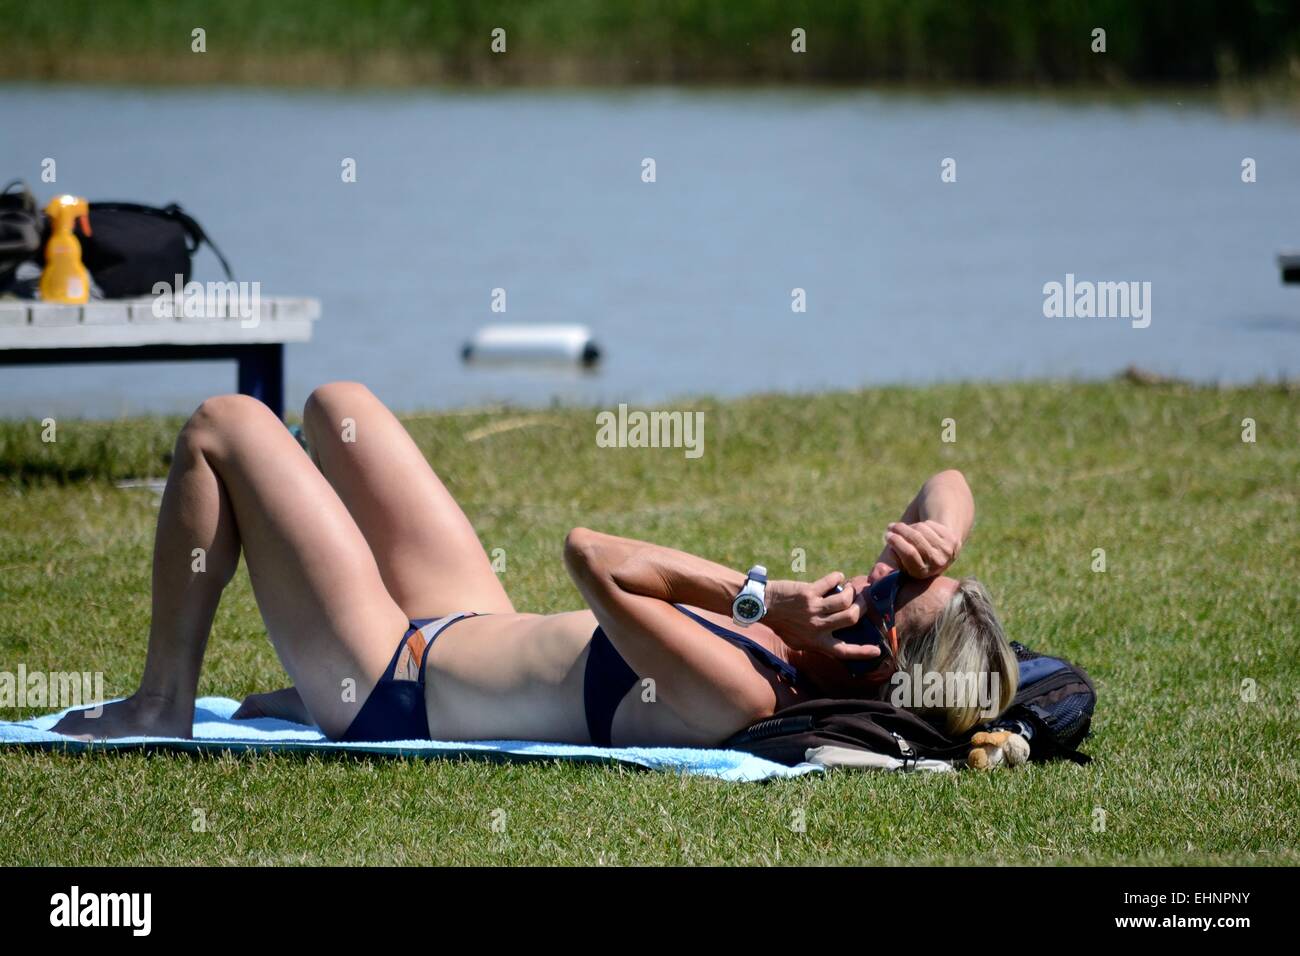 Woman in bikini sunbathes Stock Photo